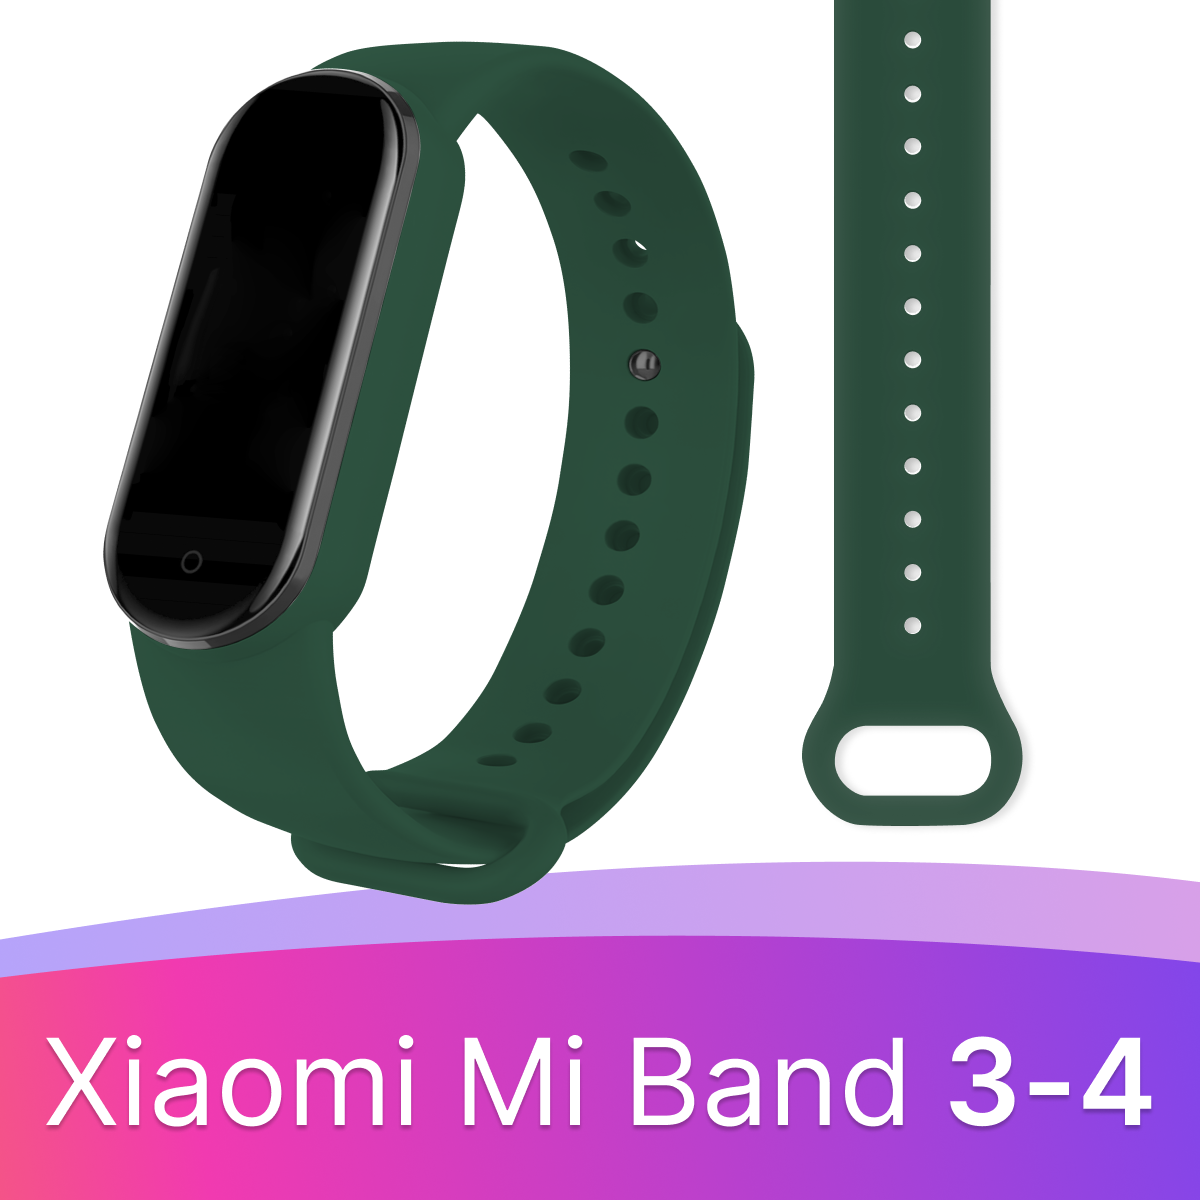 Силиконовый ремешок для смарт часов Xiaomi Mi Band 3 и 4 / Спортивный сменный браслет на фитнес трекер Сяоми Ми Бэнд 3 и 4 / Салатовый